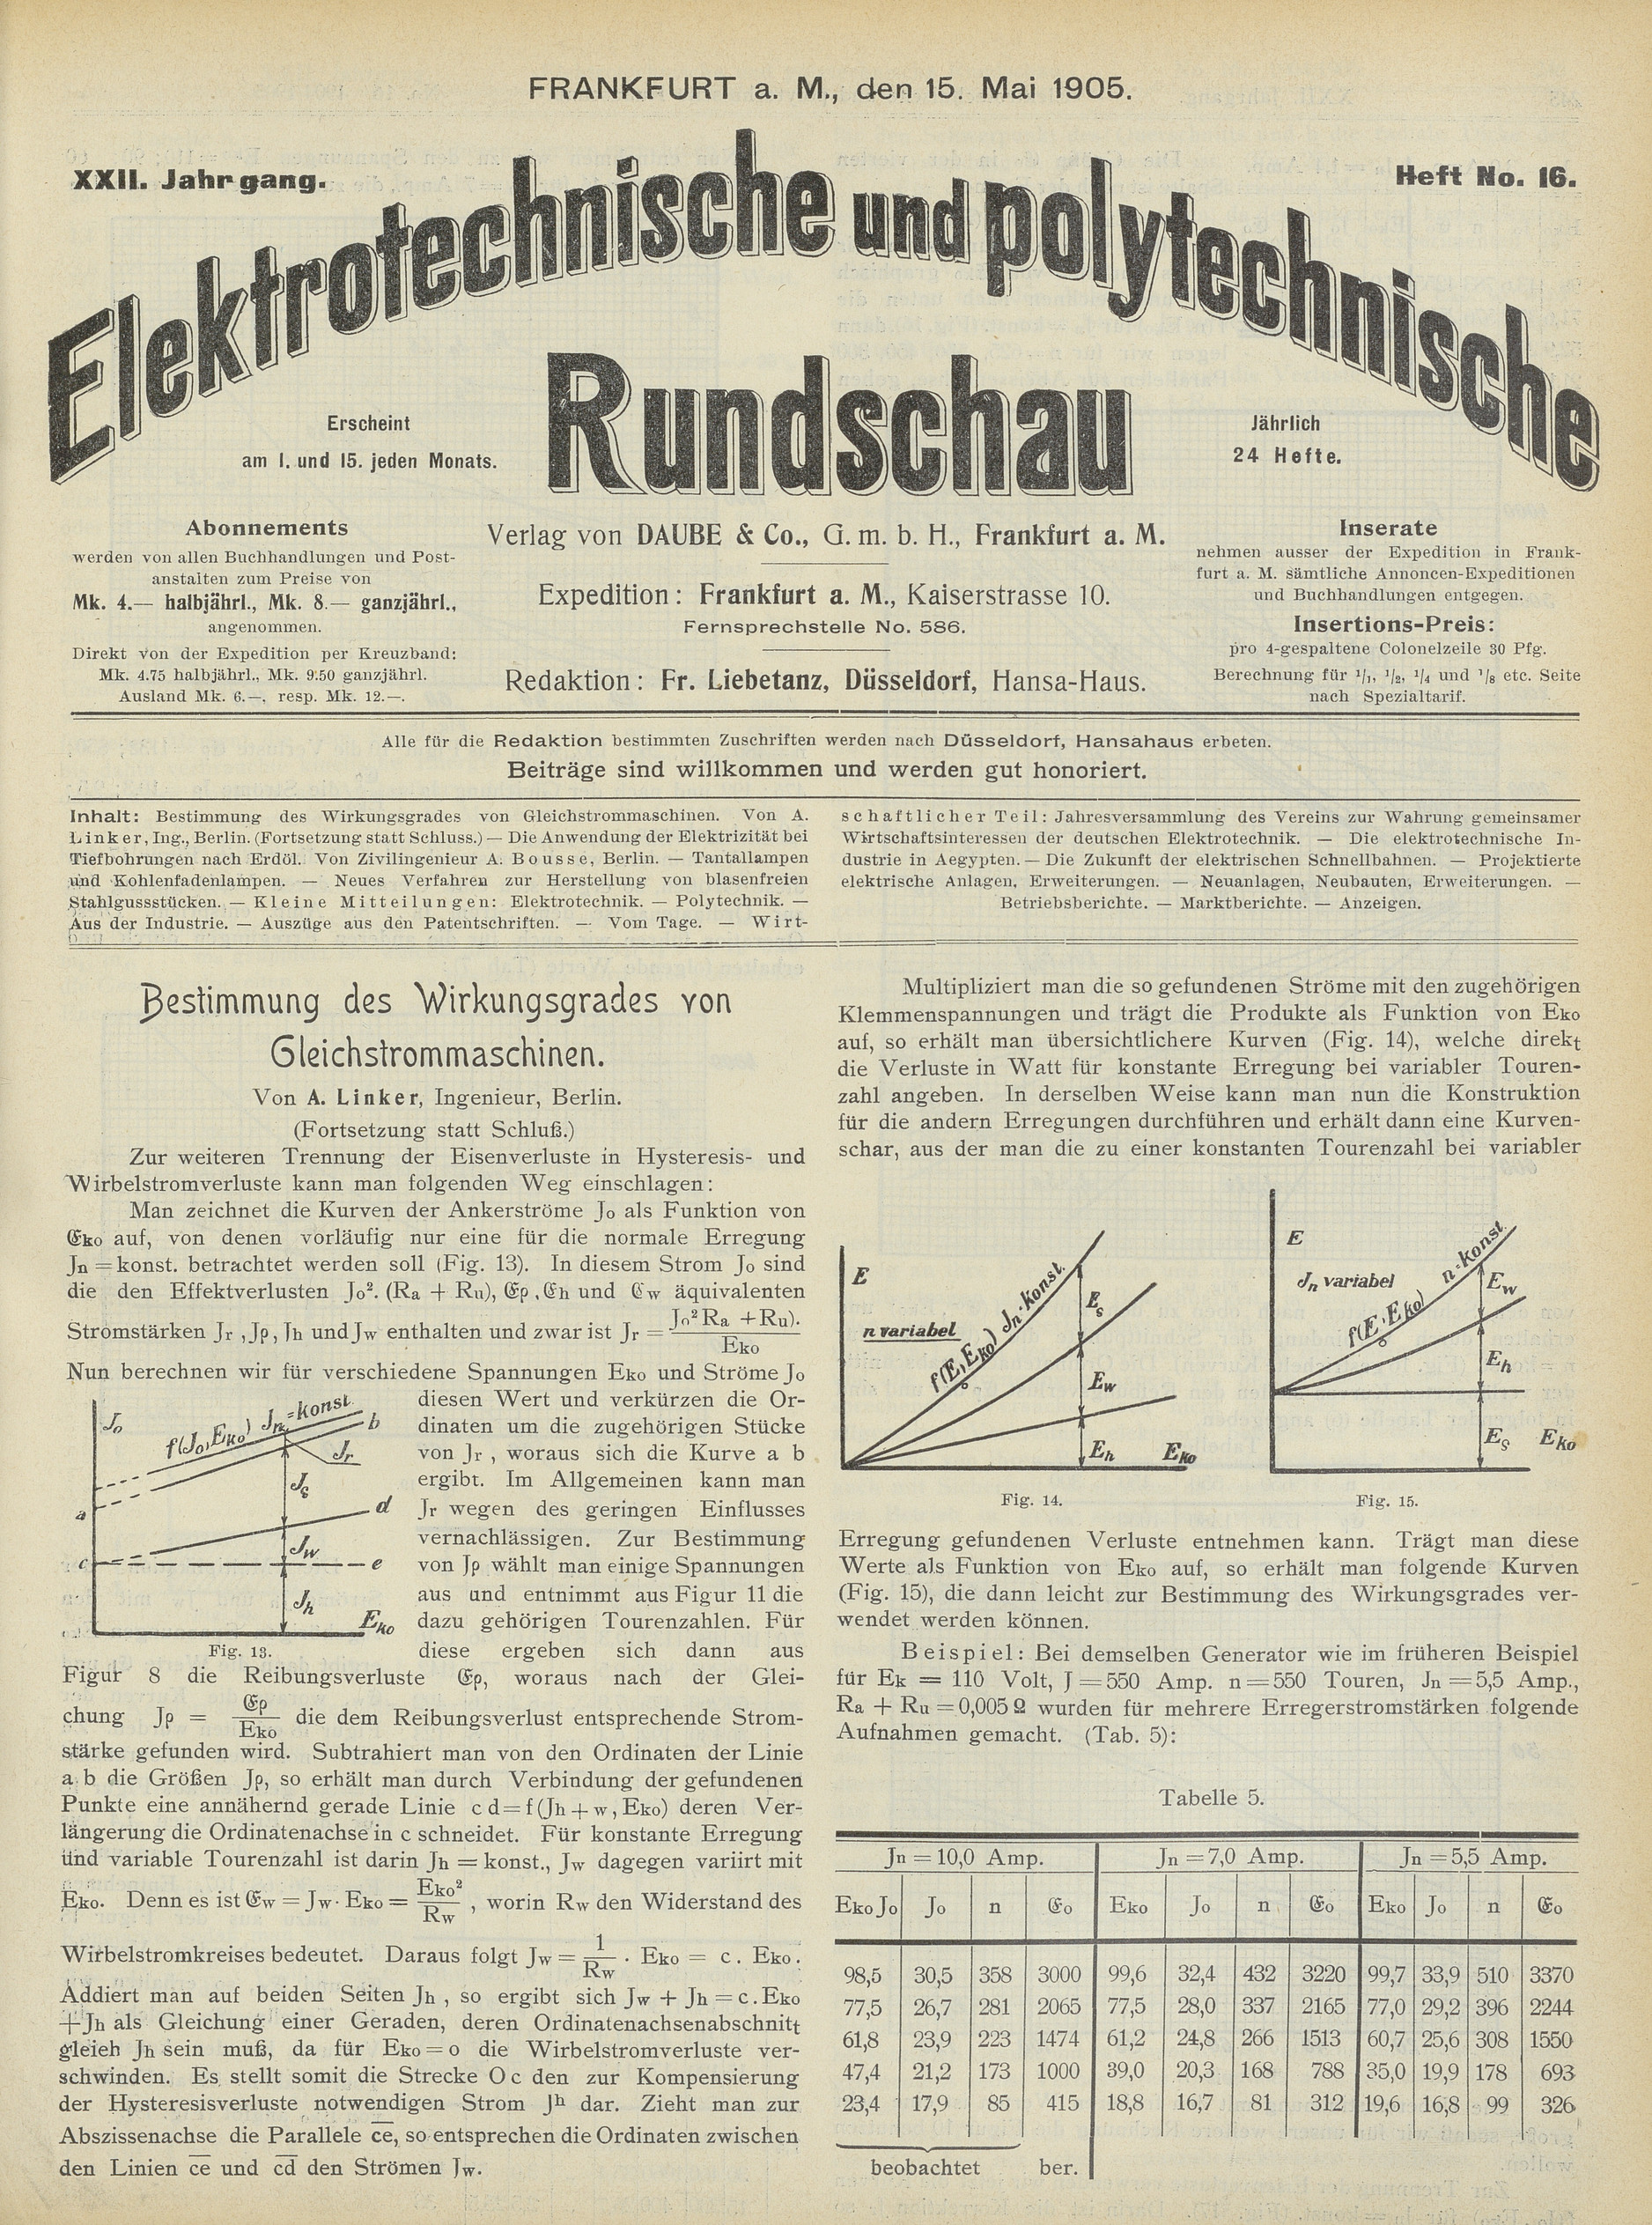 Elektrotechnische und polytechnische Rundschau, XXII. Jahrgang, Heft No. 16